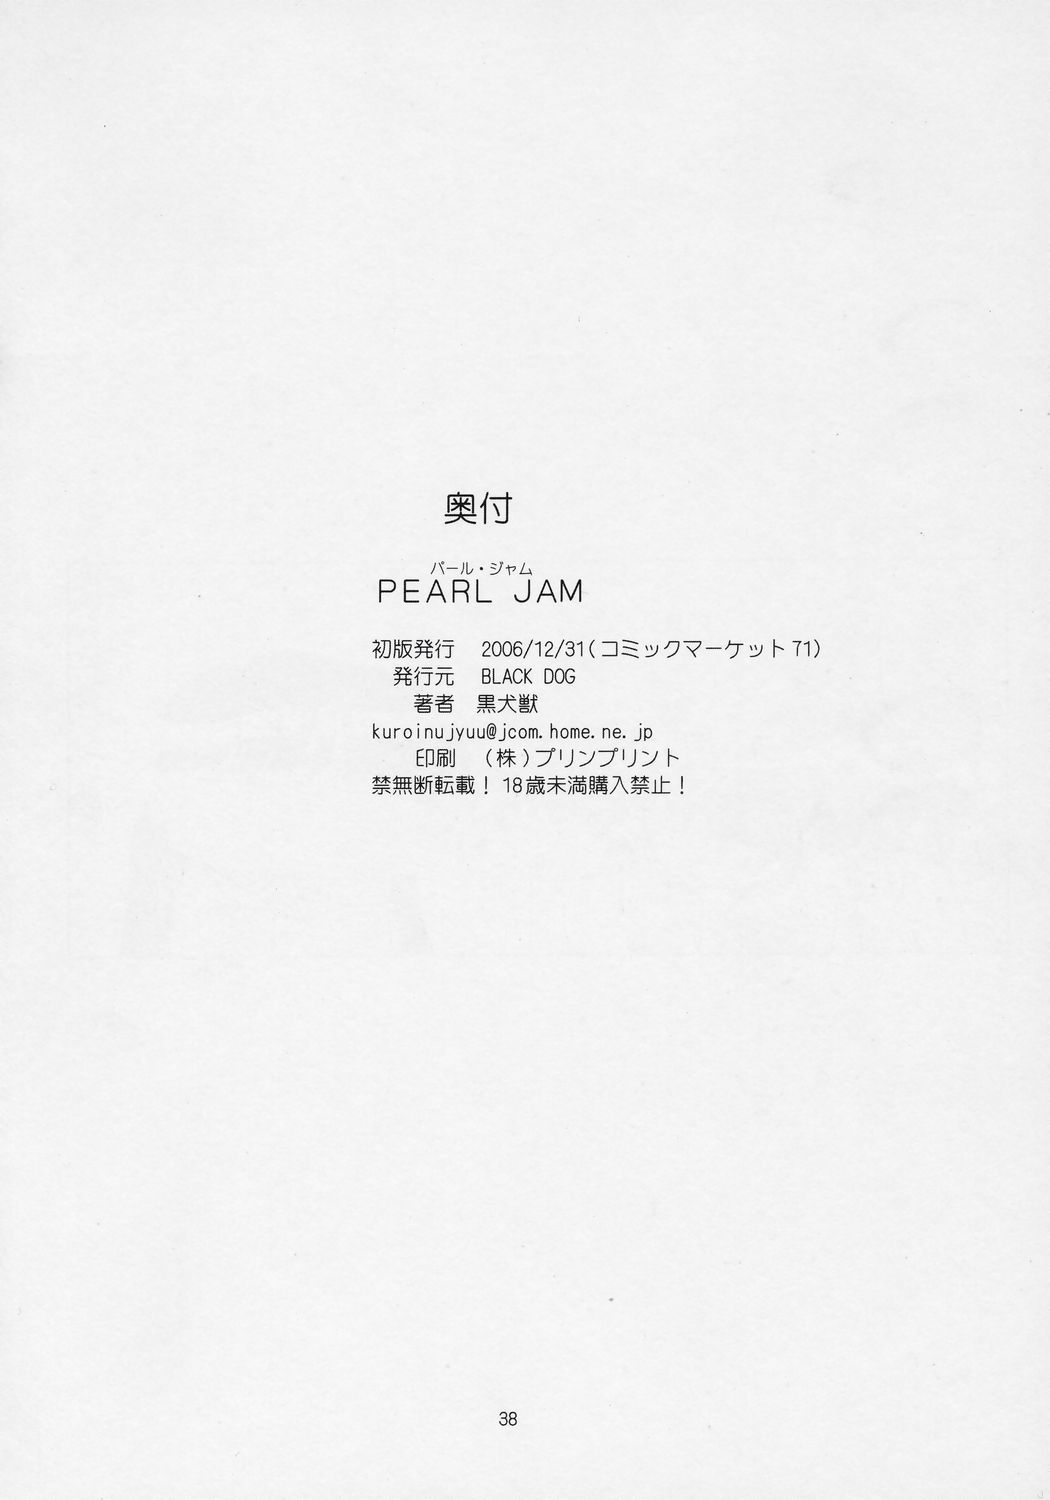 Pearl Jam sailor moon 36 hentai manga